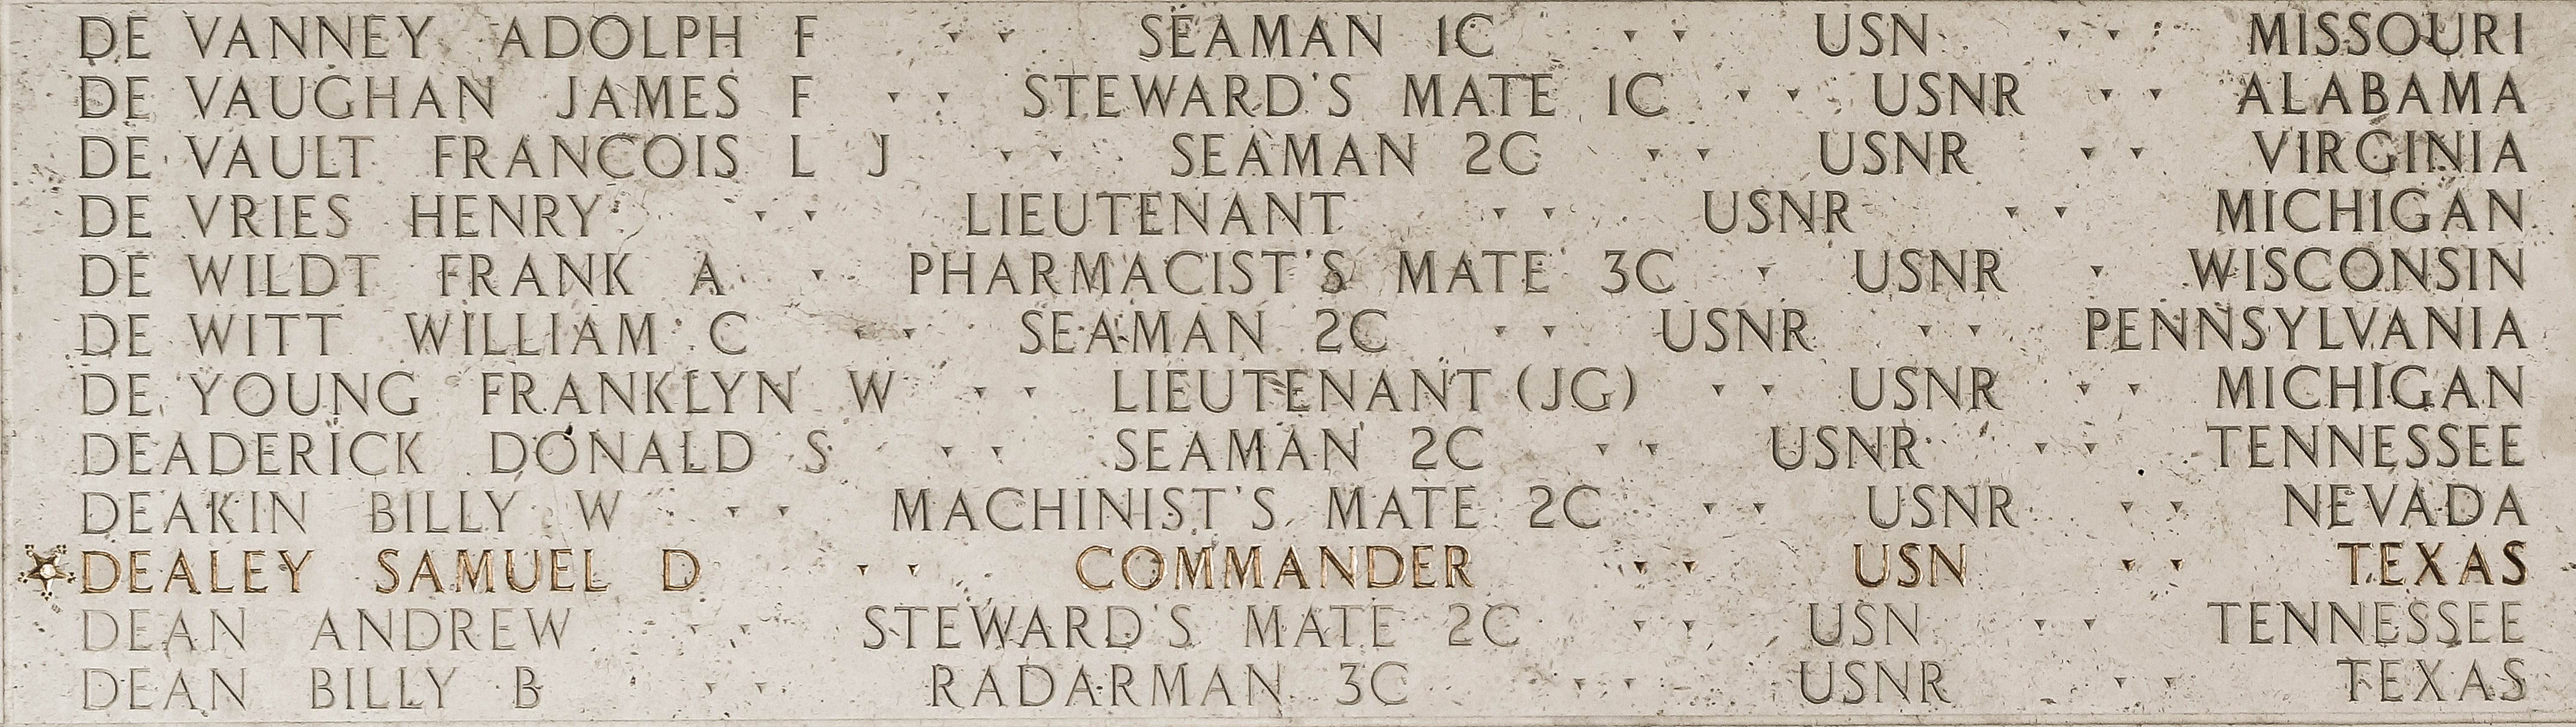 Donald S. Deaderick, Seaman Second Class